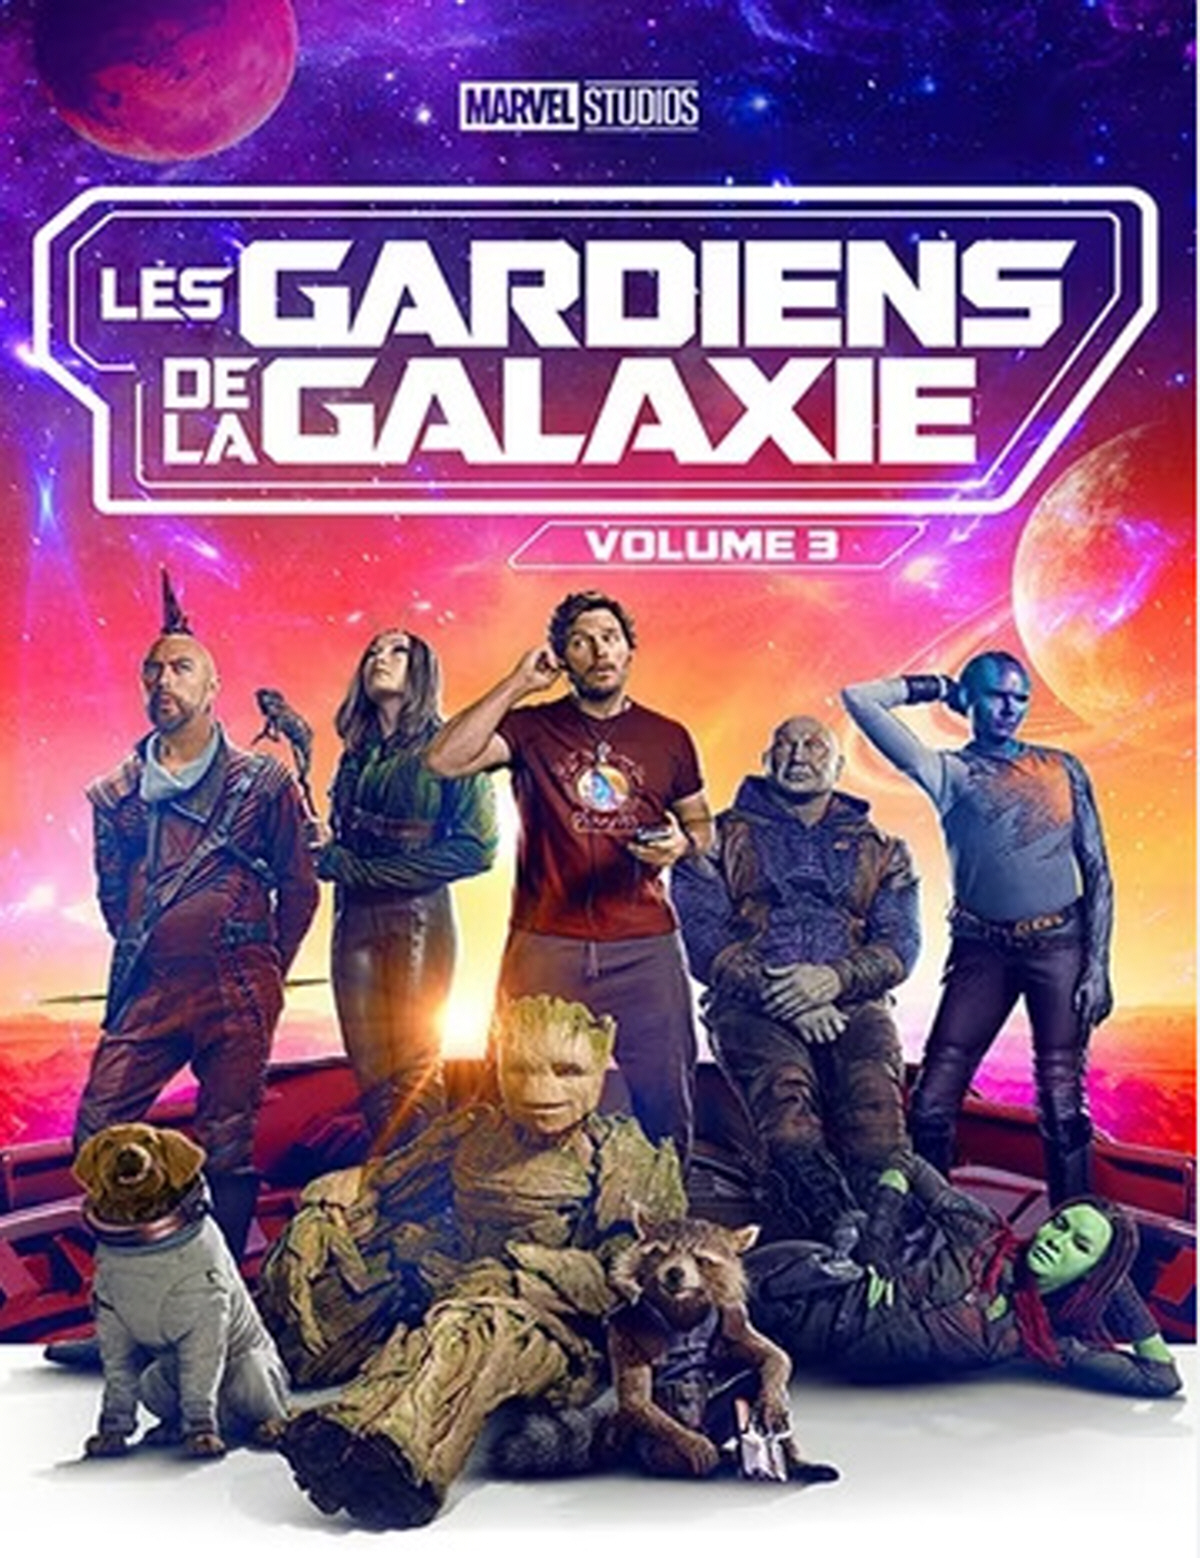 Les jardins de la galaxie vol 1 est un film produit par la Walt Disney Company qui a reçu plusieurs nominations aux Oscars.